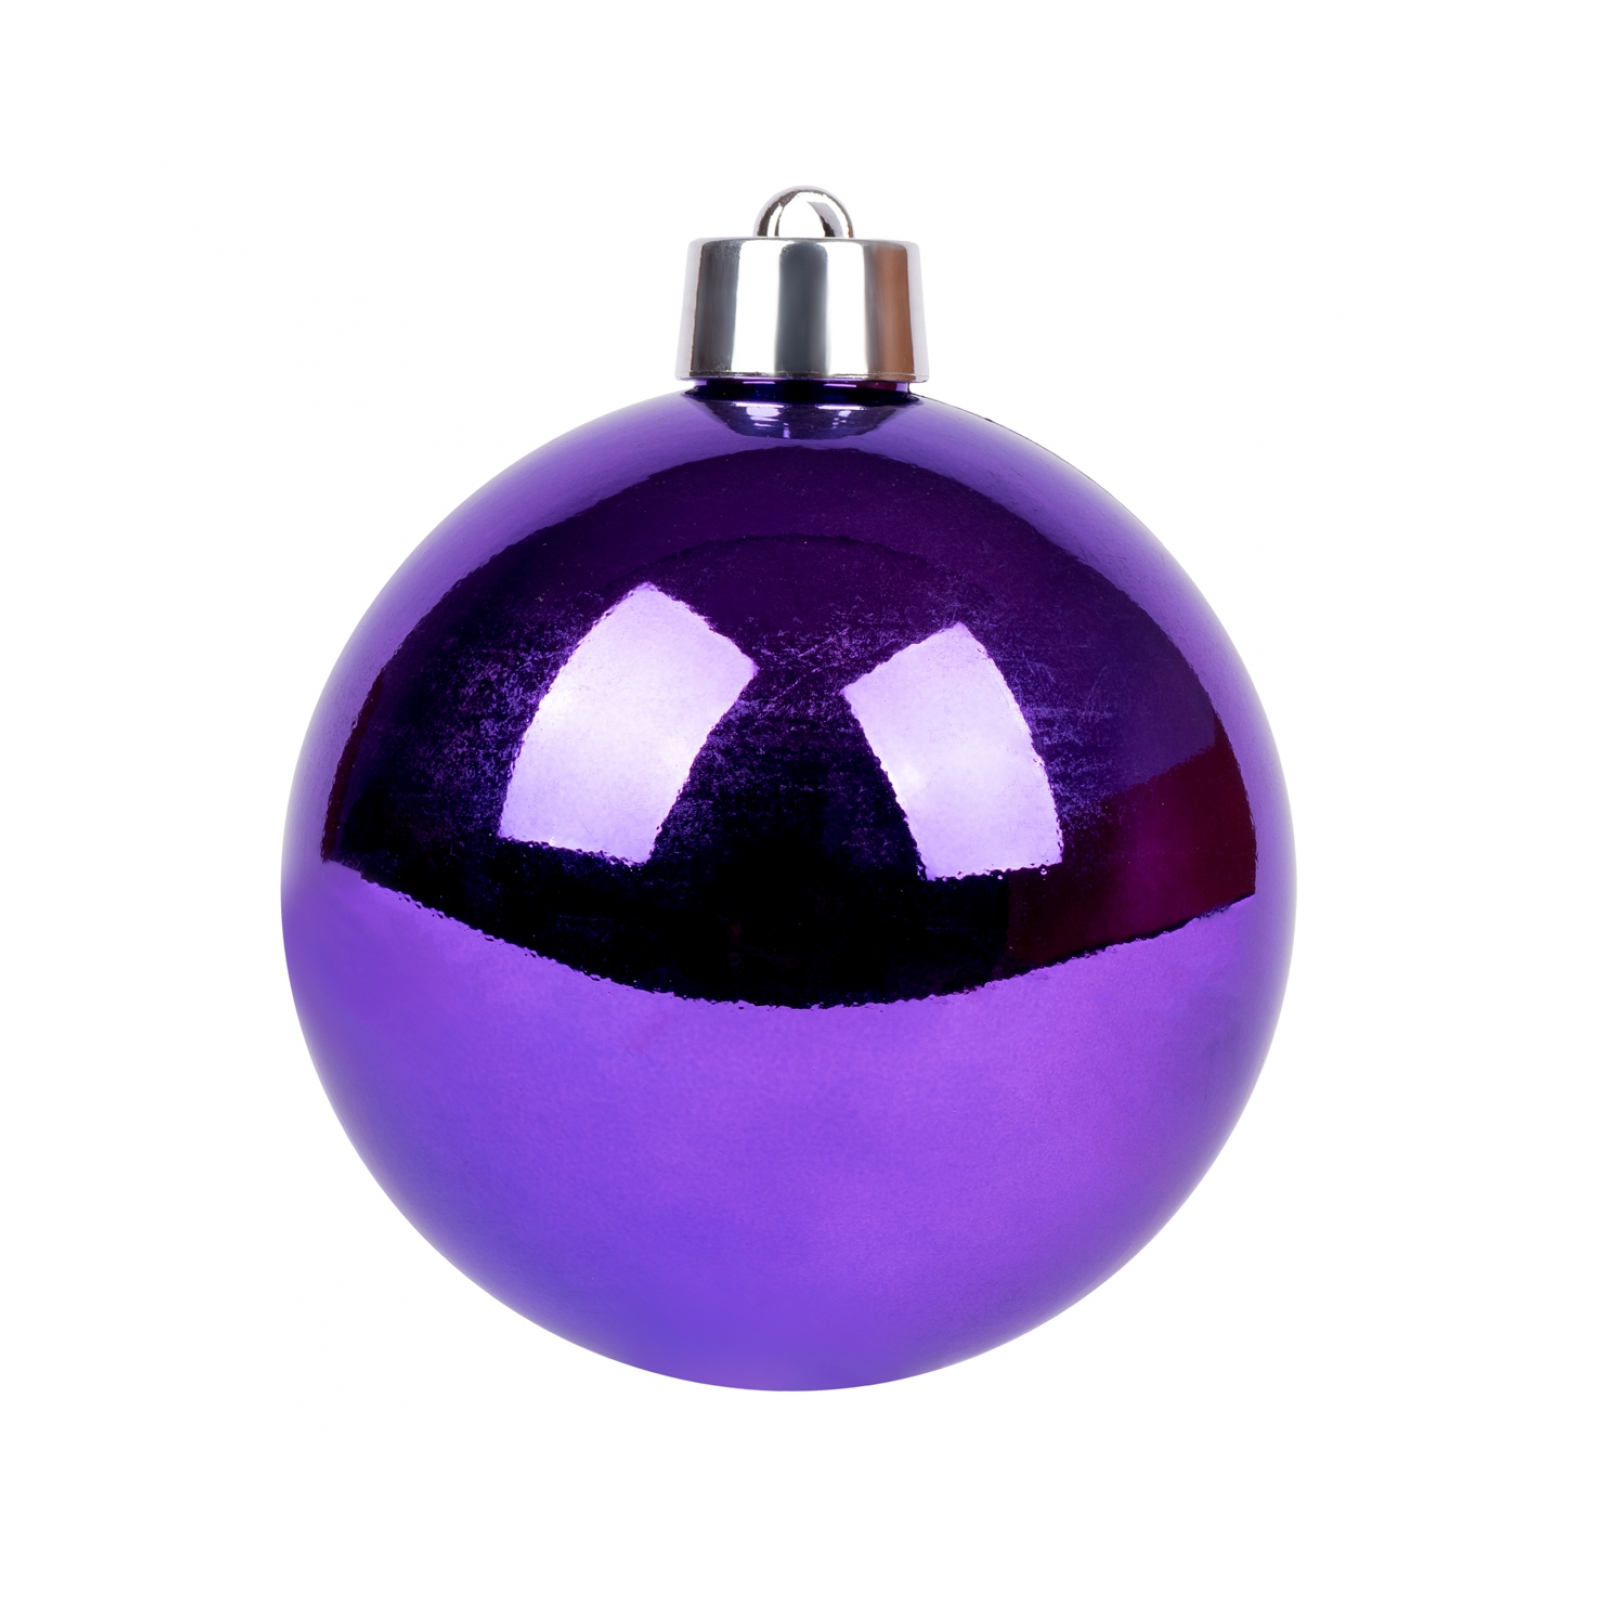 Елочная игрушка Novogod`ko шар, пластик, 20 см, фиолетовый, глянец (974072)